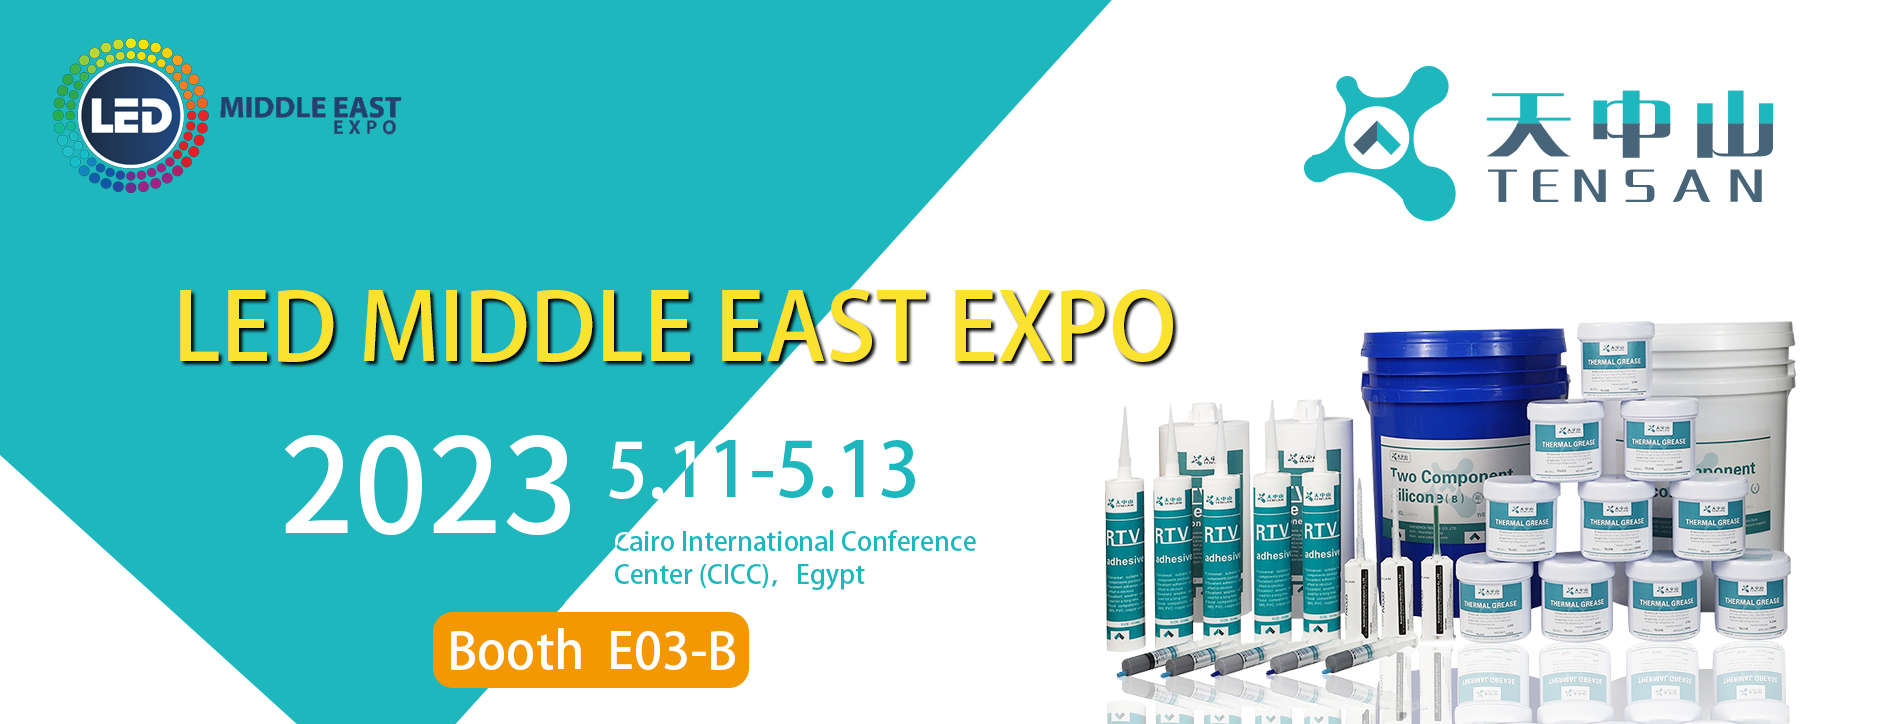 Light Middle East EXPO, EGYPT fair